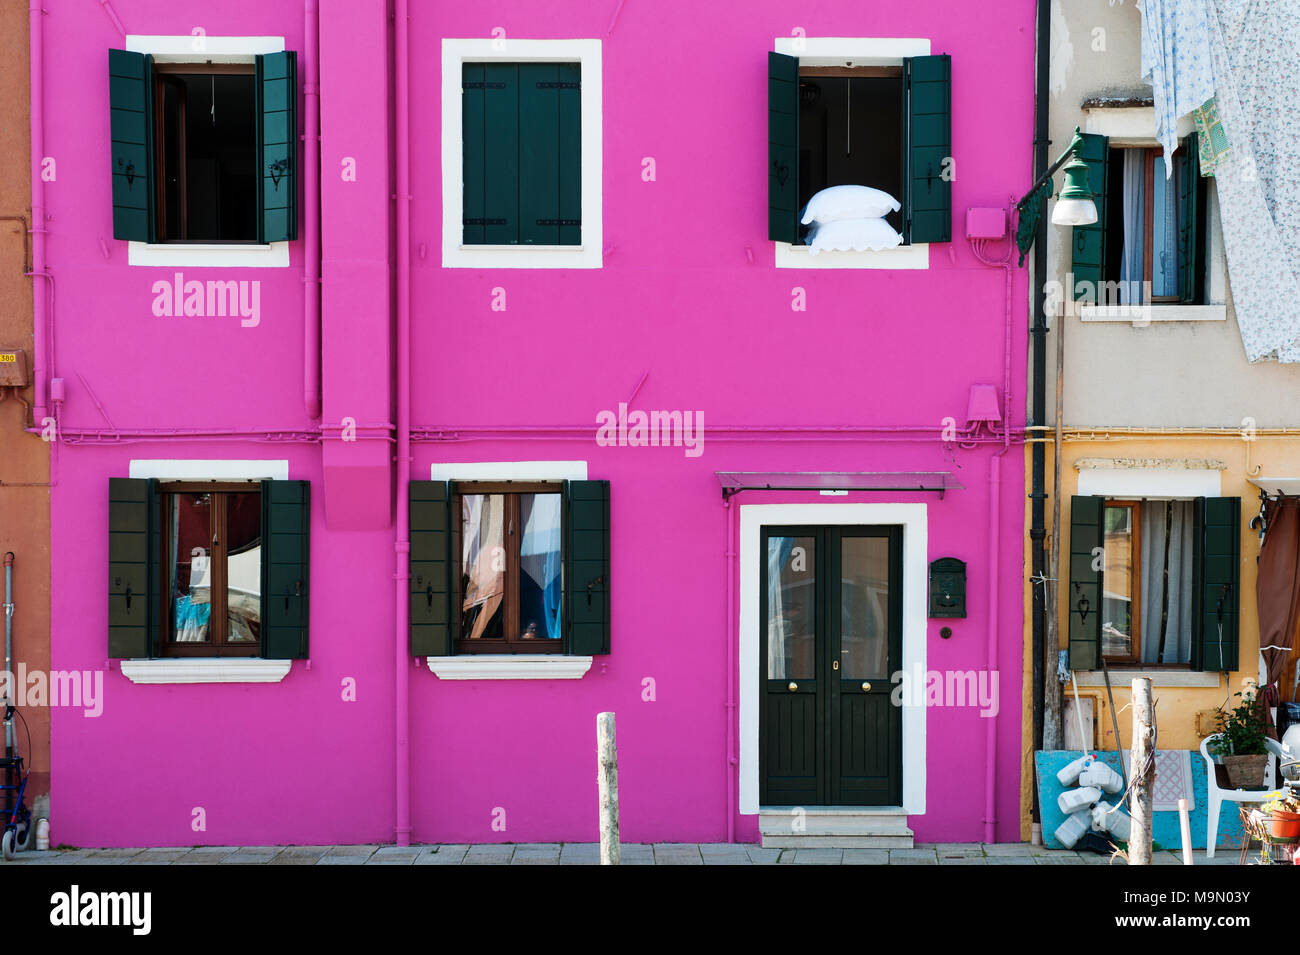 Haus fassade farbe Lila in Burano, eine gemütliche Insel in der Lagune von  Venedig für seine bunten Gebäude bekannt Stockfotografie - Alamy